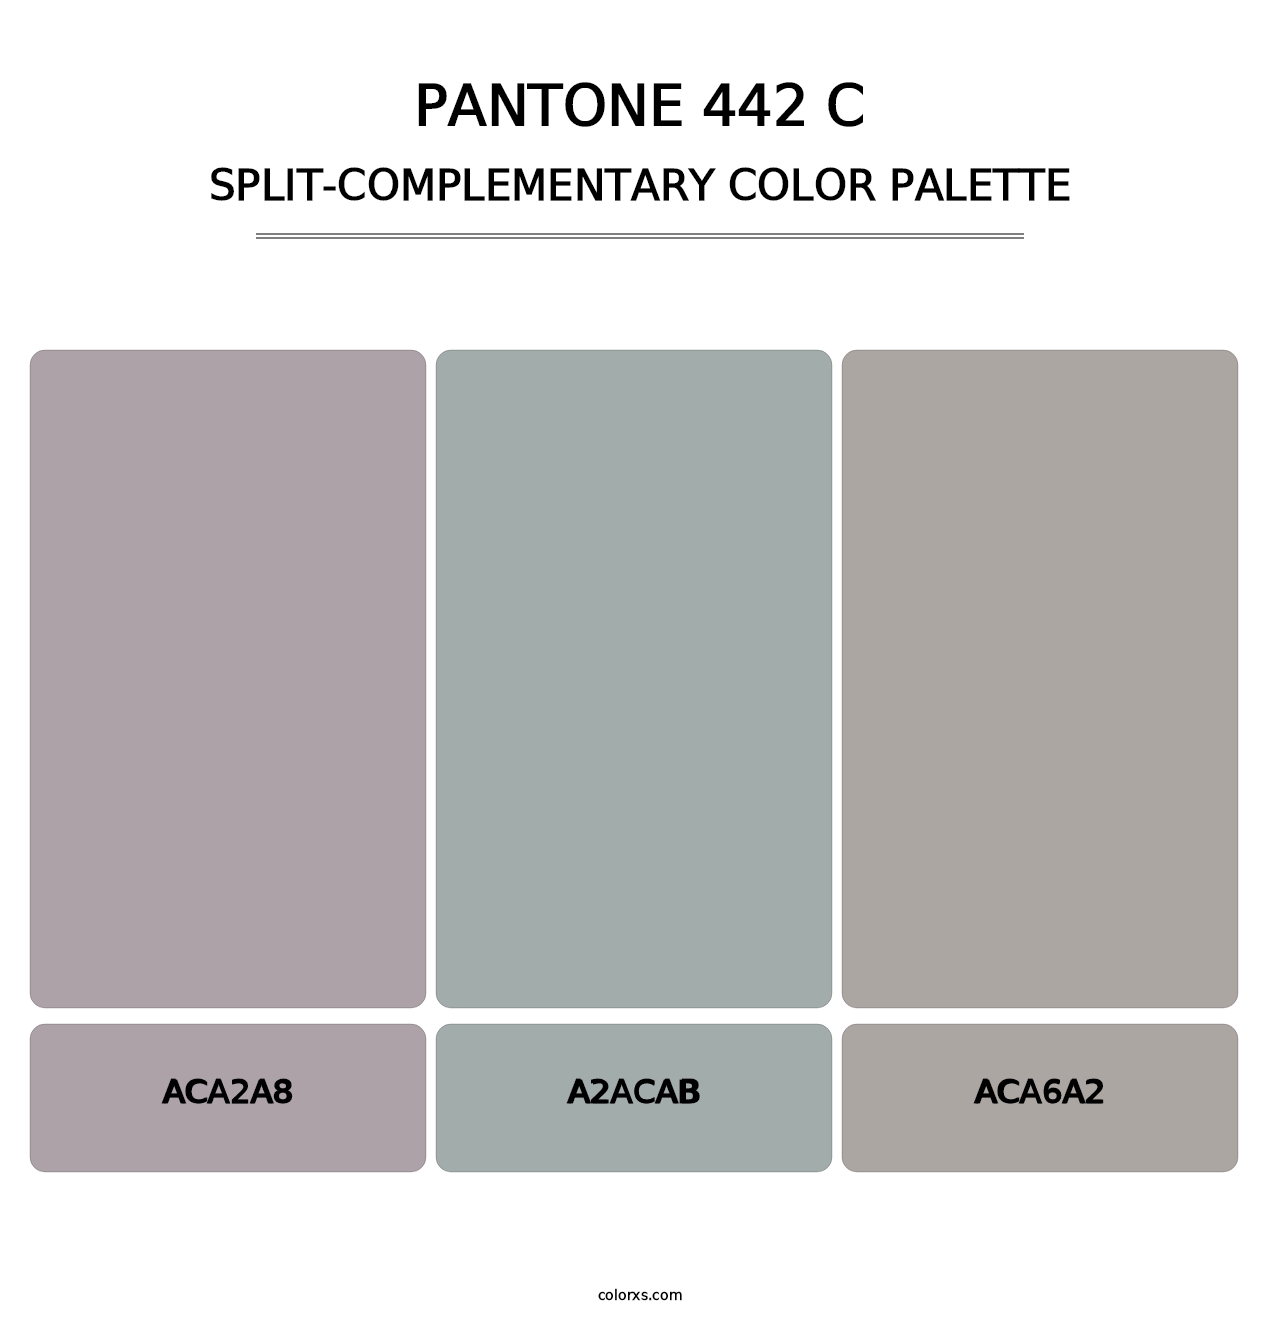 PANTONE 442 C - Split-Complementary Color Palette